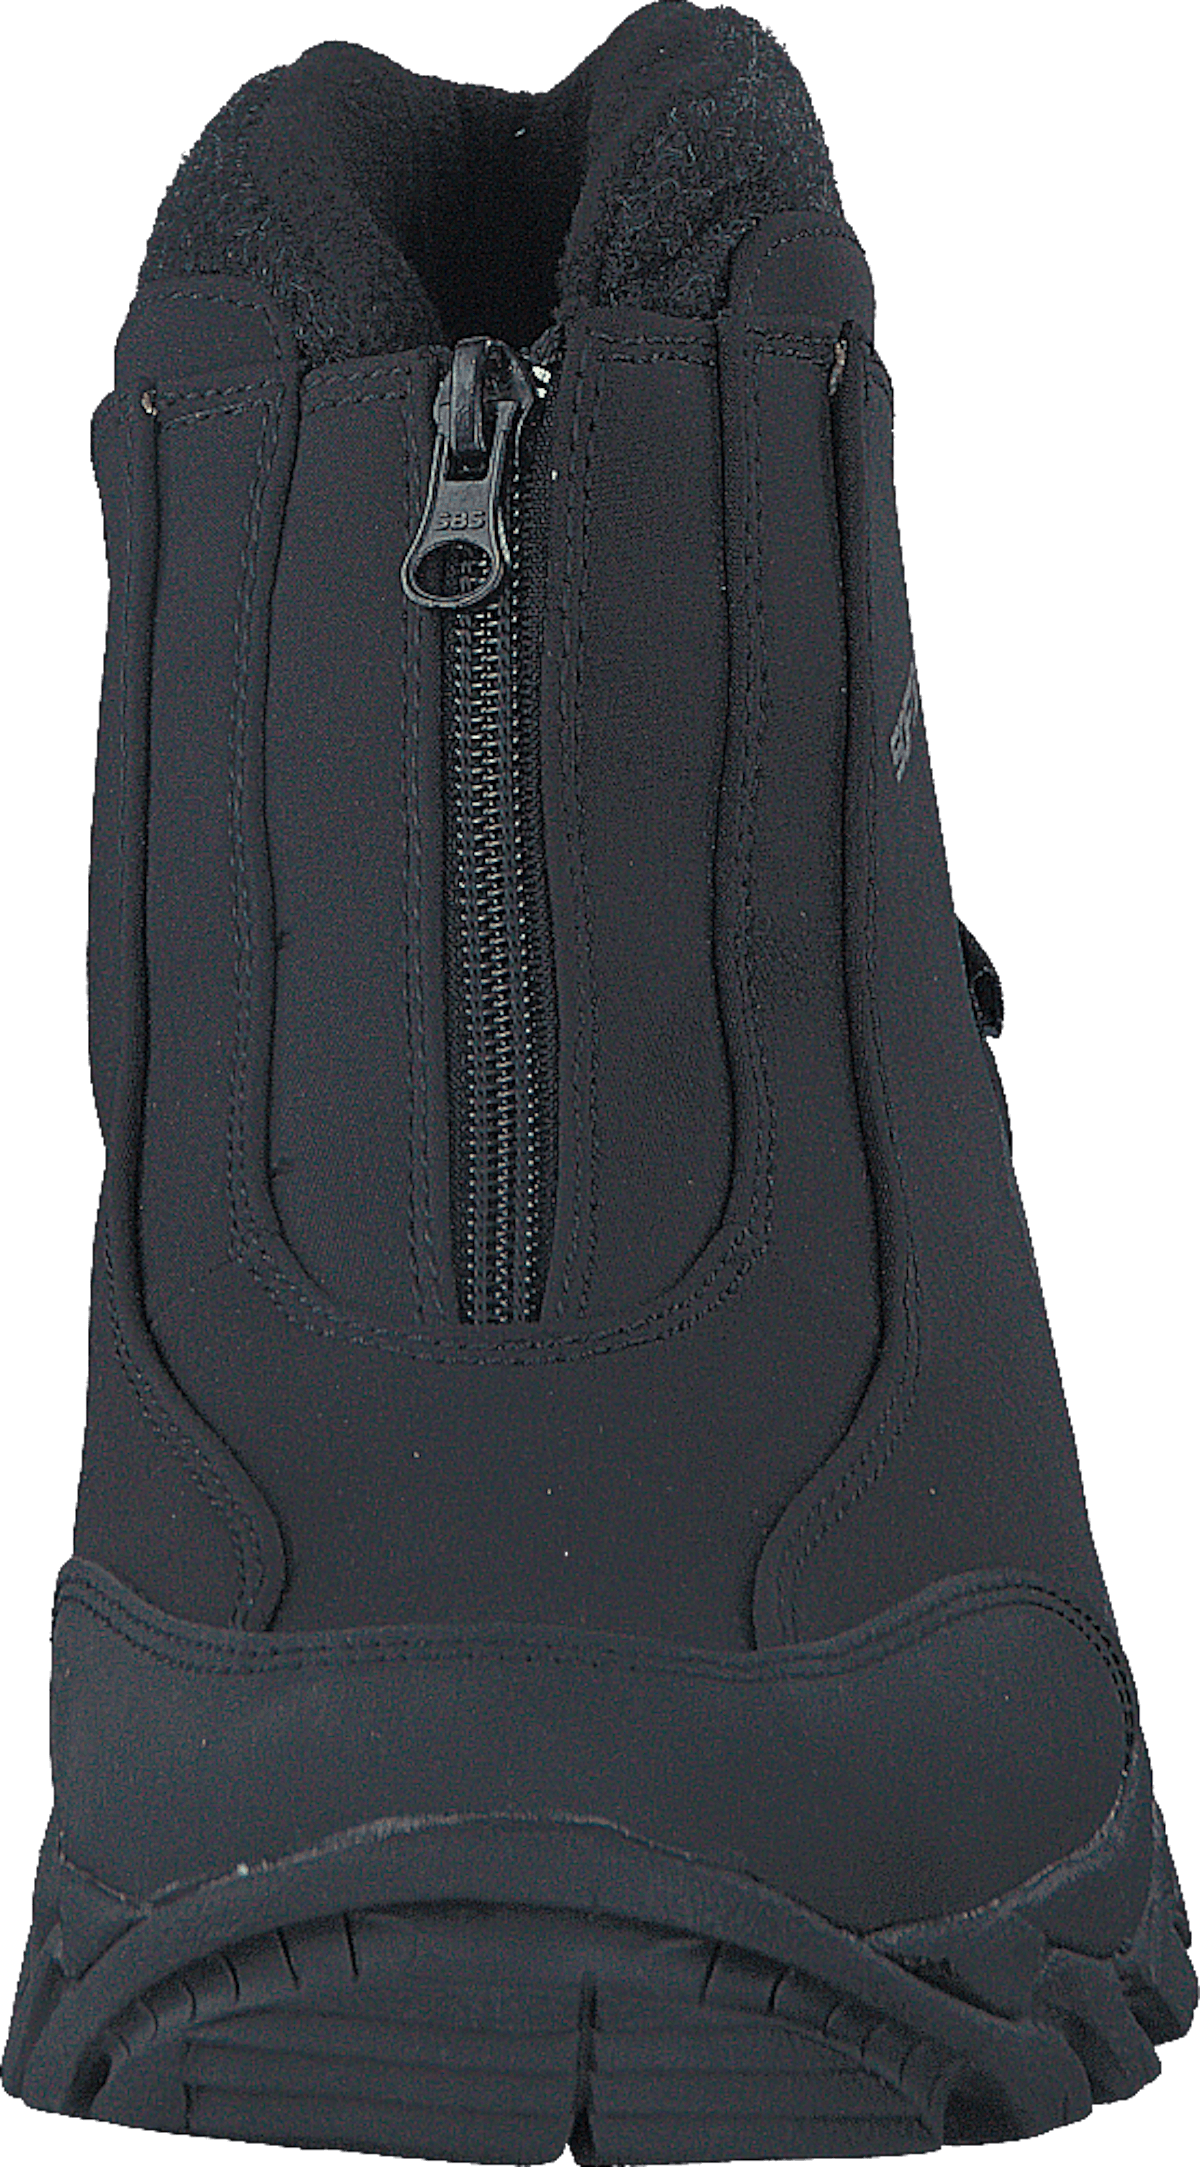 430-5985 Waterproof Warm Lined Black